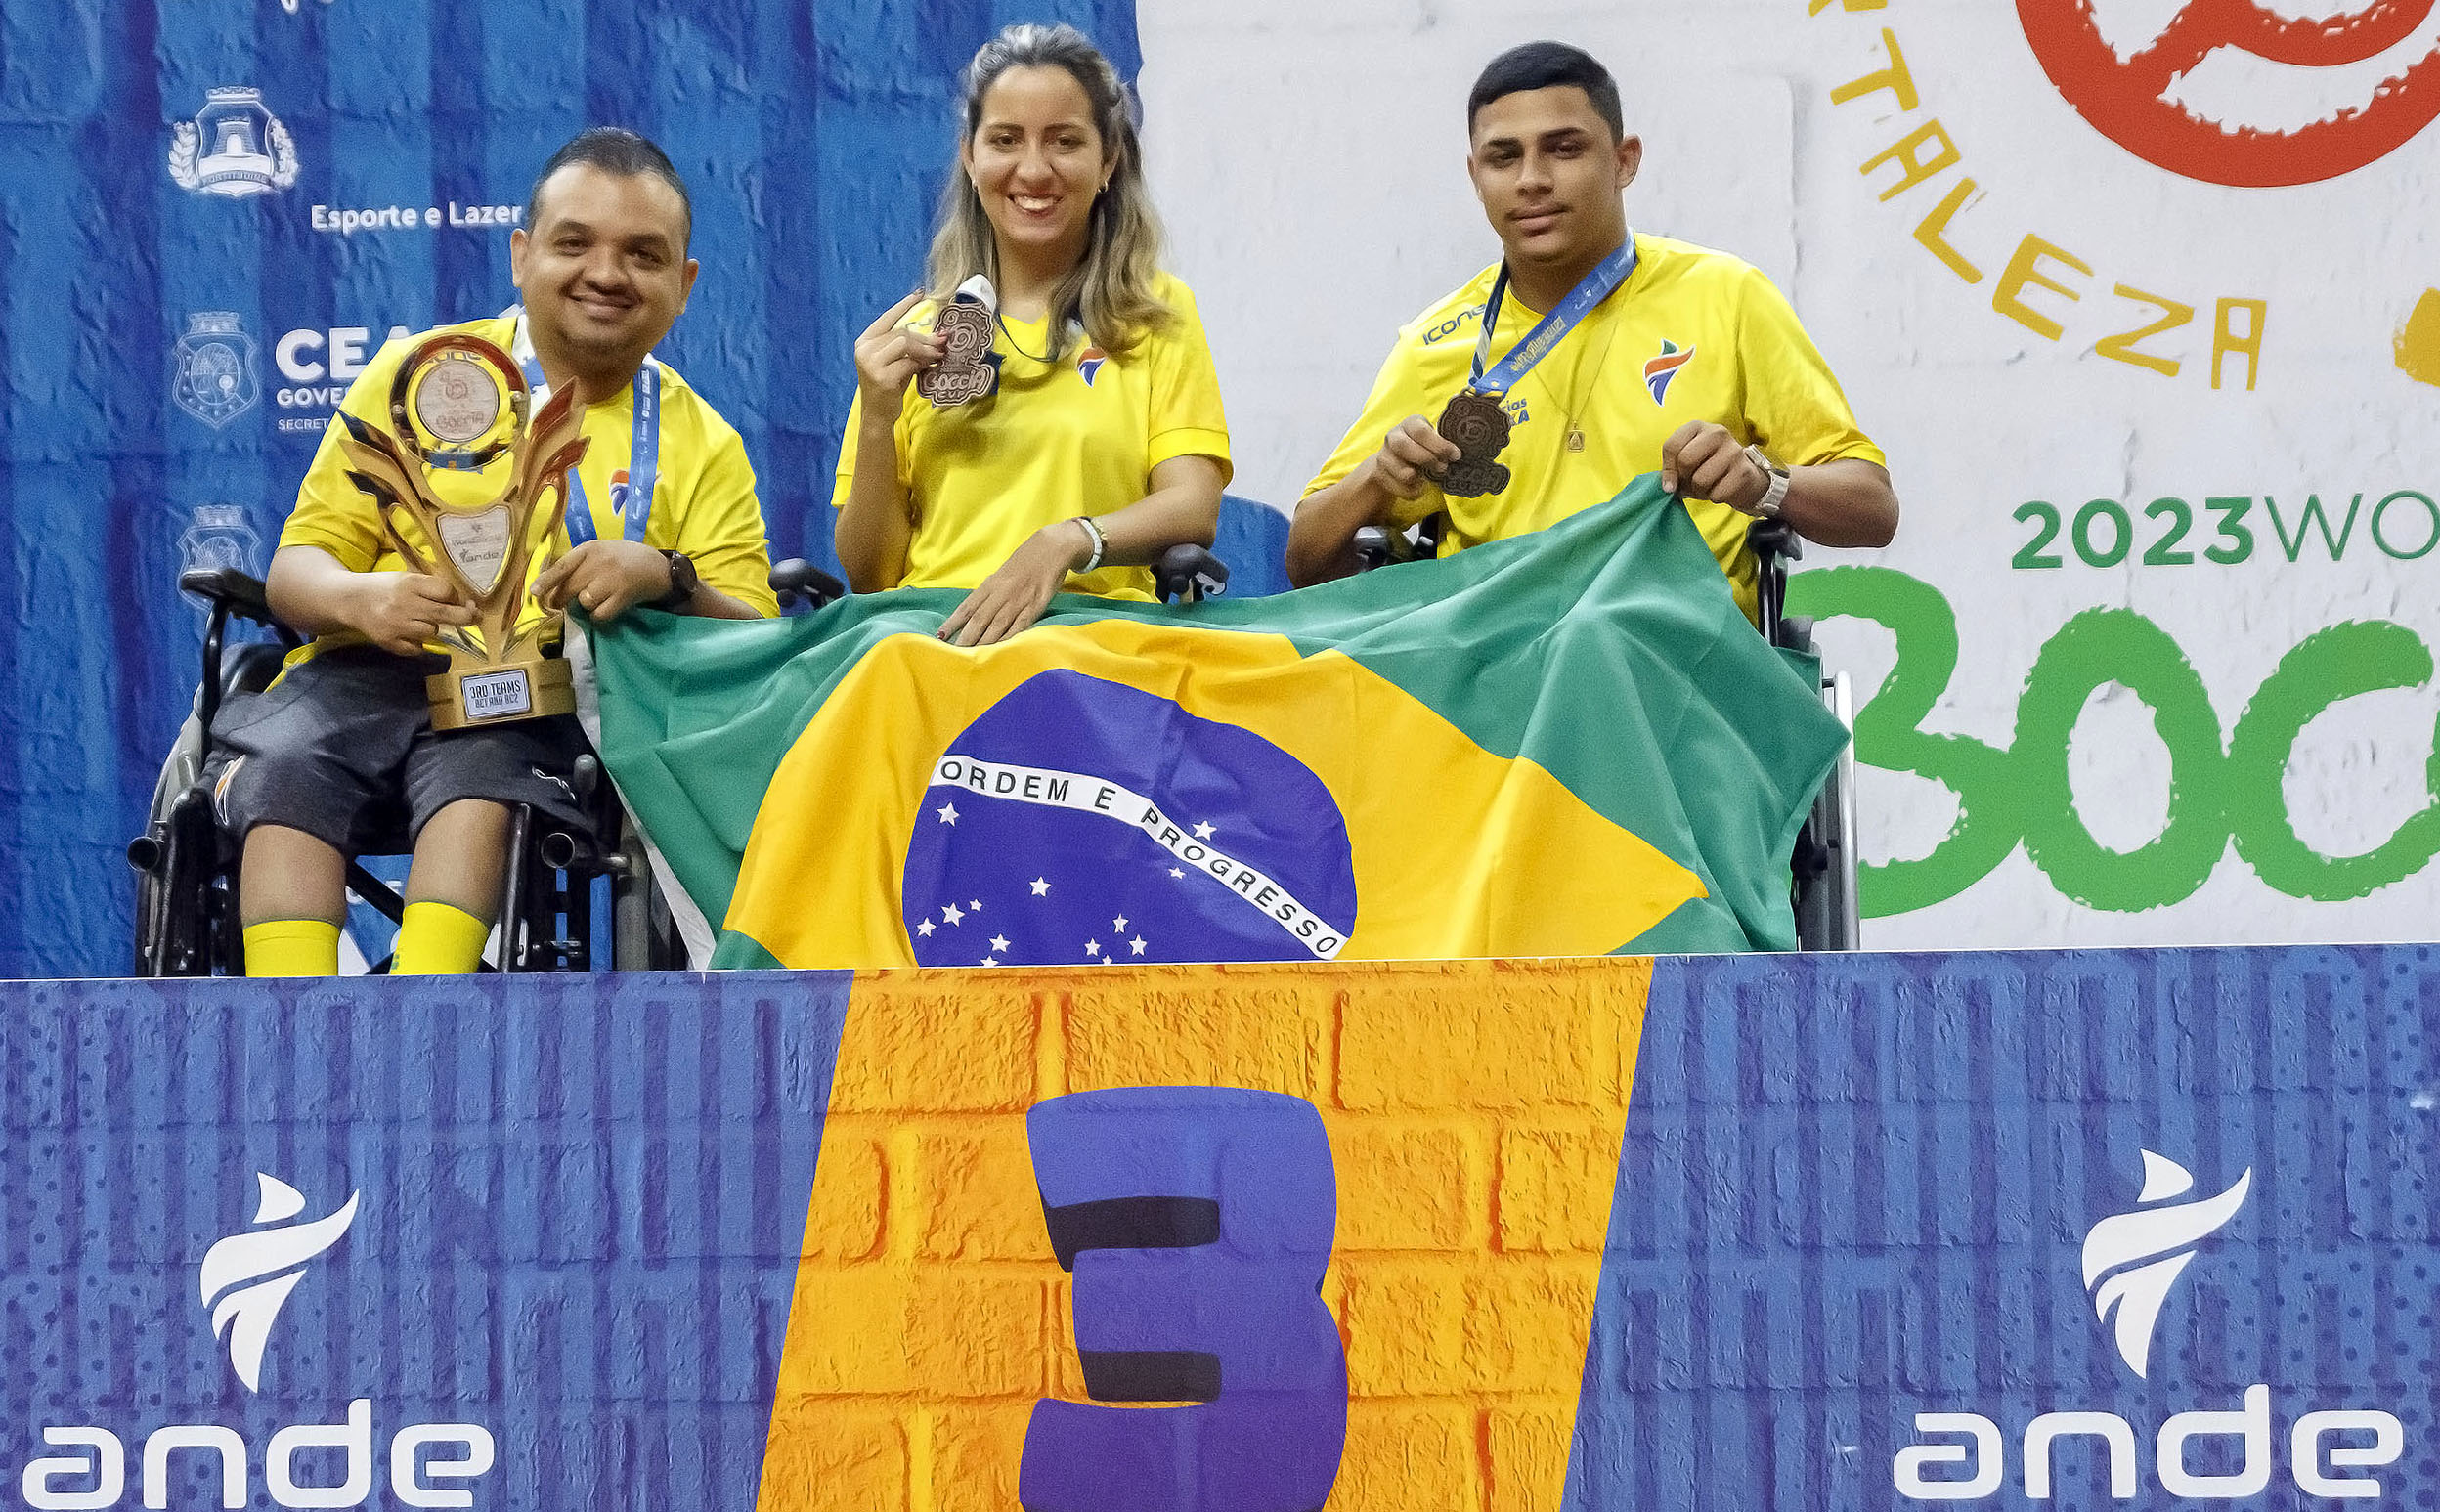 Brasil conquista título mundial no vôlei sentado – Web Vôlei